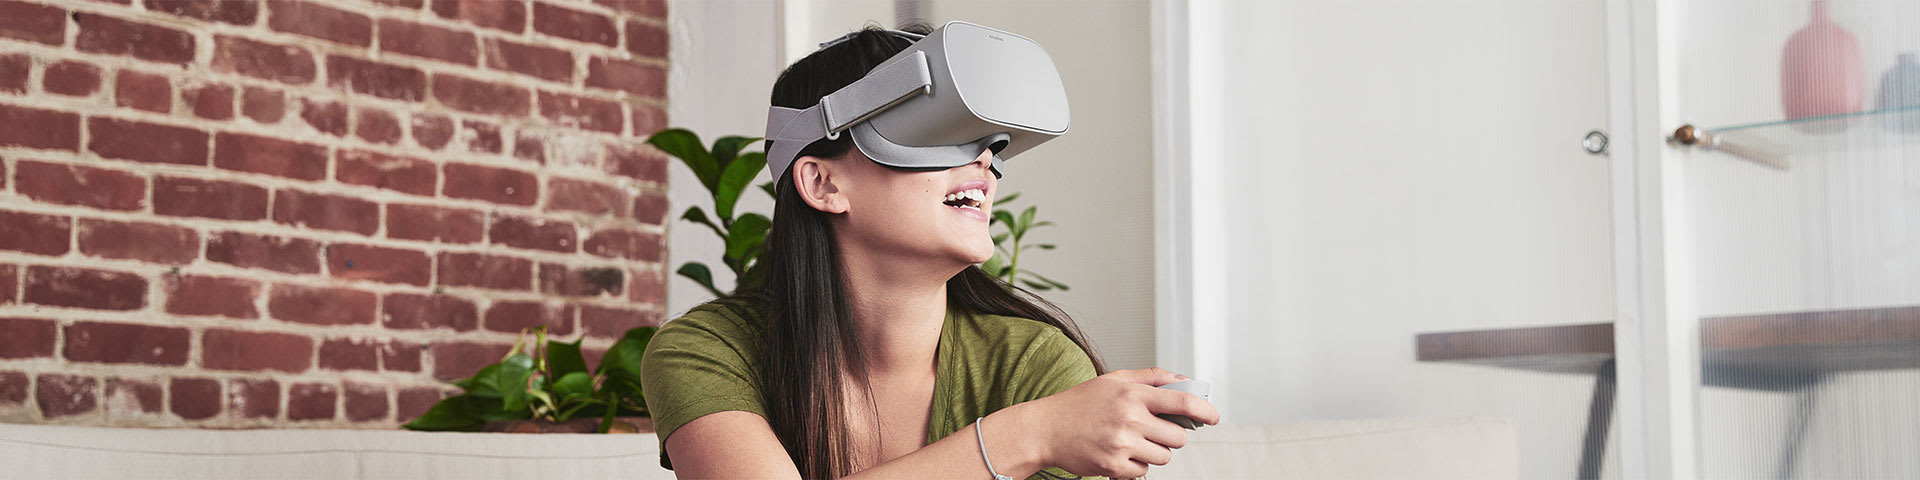 VR Prescription Lenses for Oculus Go